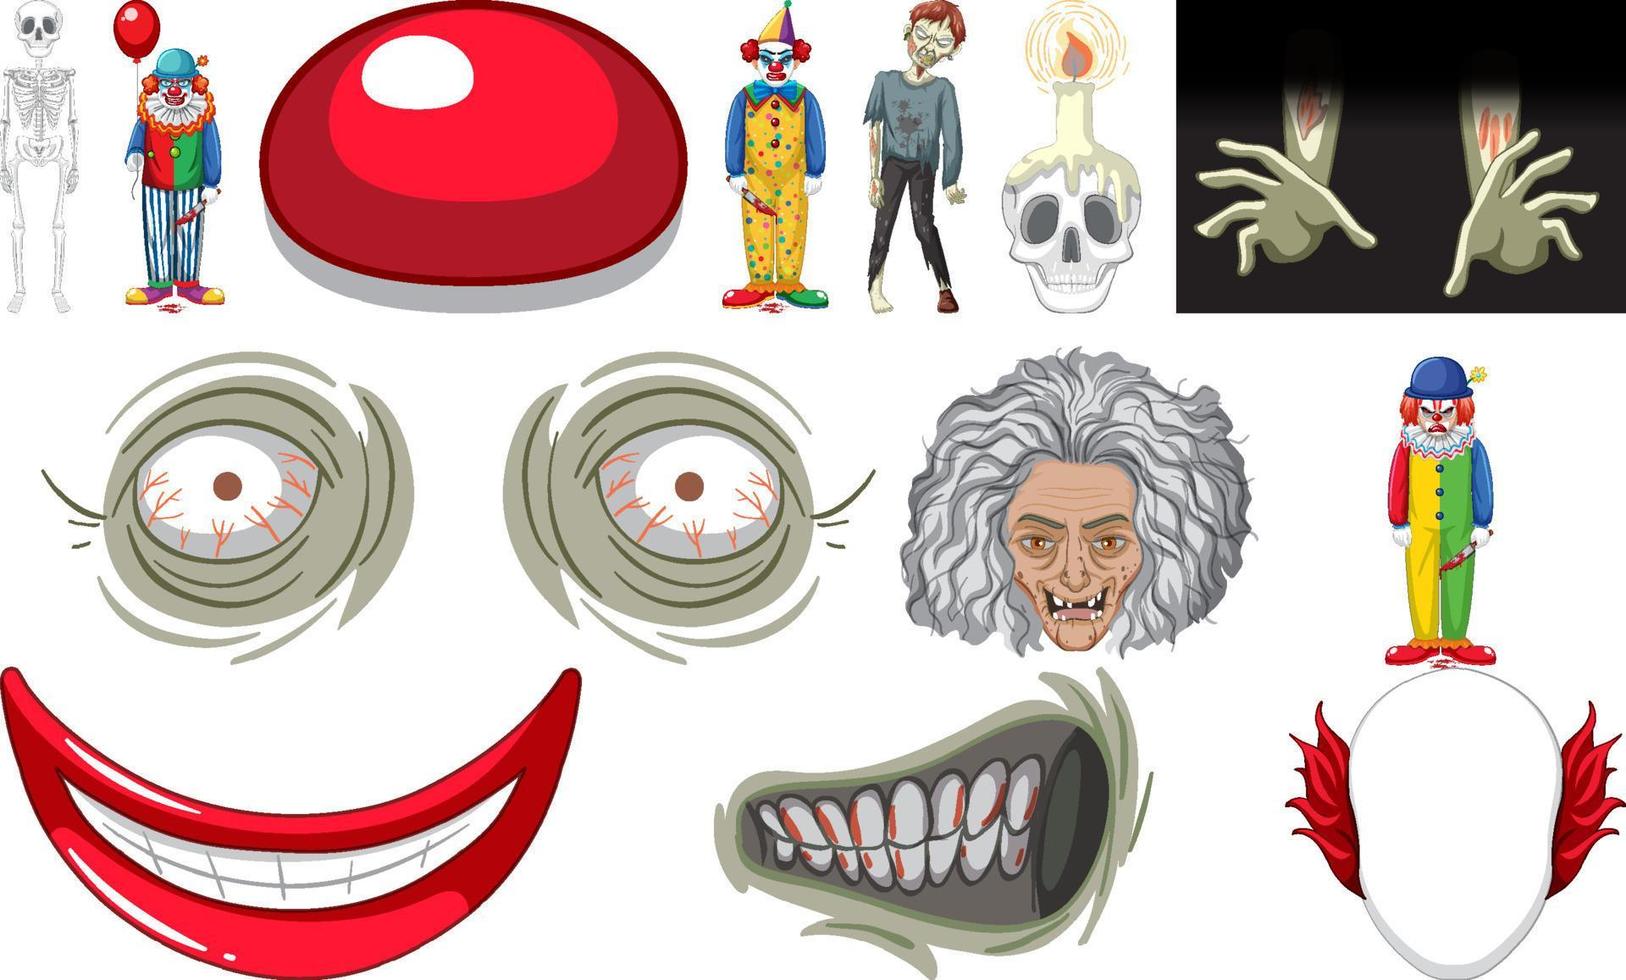 ensemble d'objets d'halloween d'horreur et de personnages de dessins animés vecteur